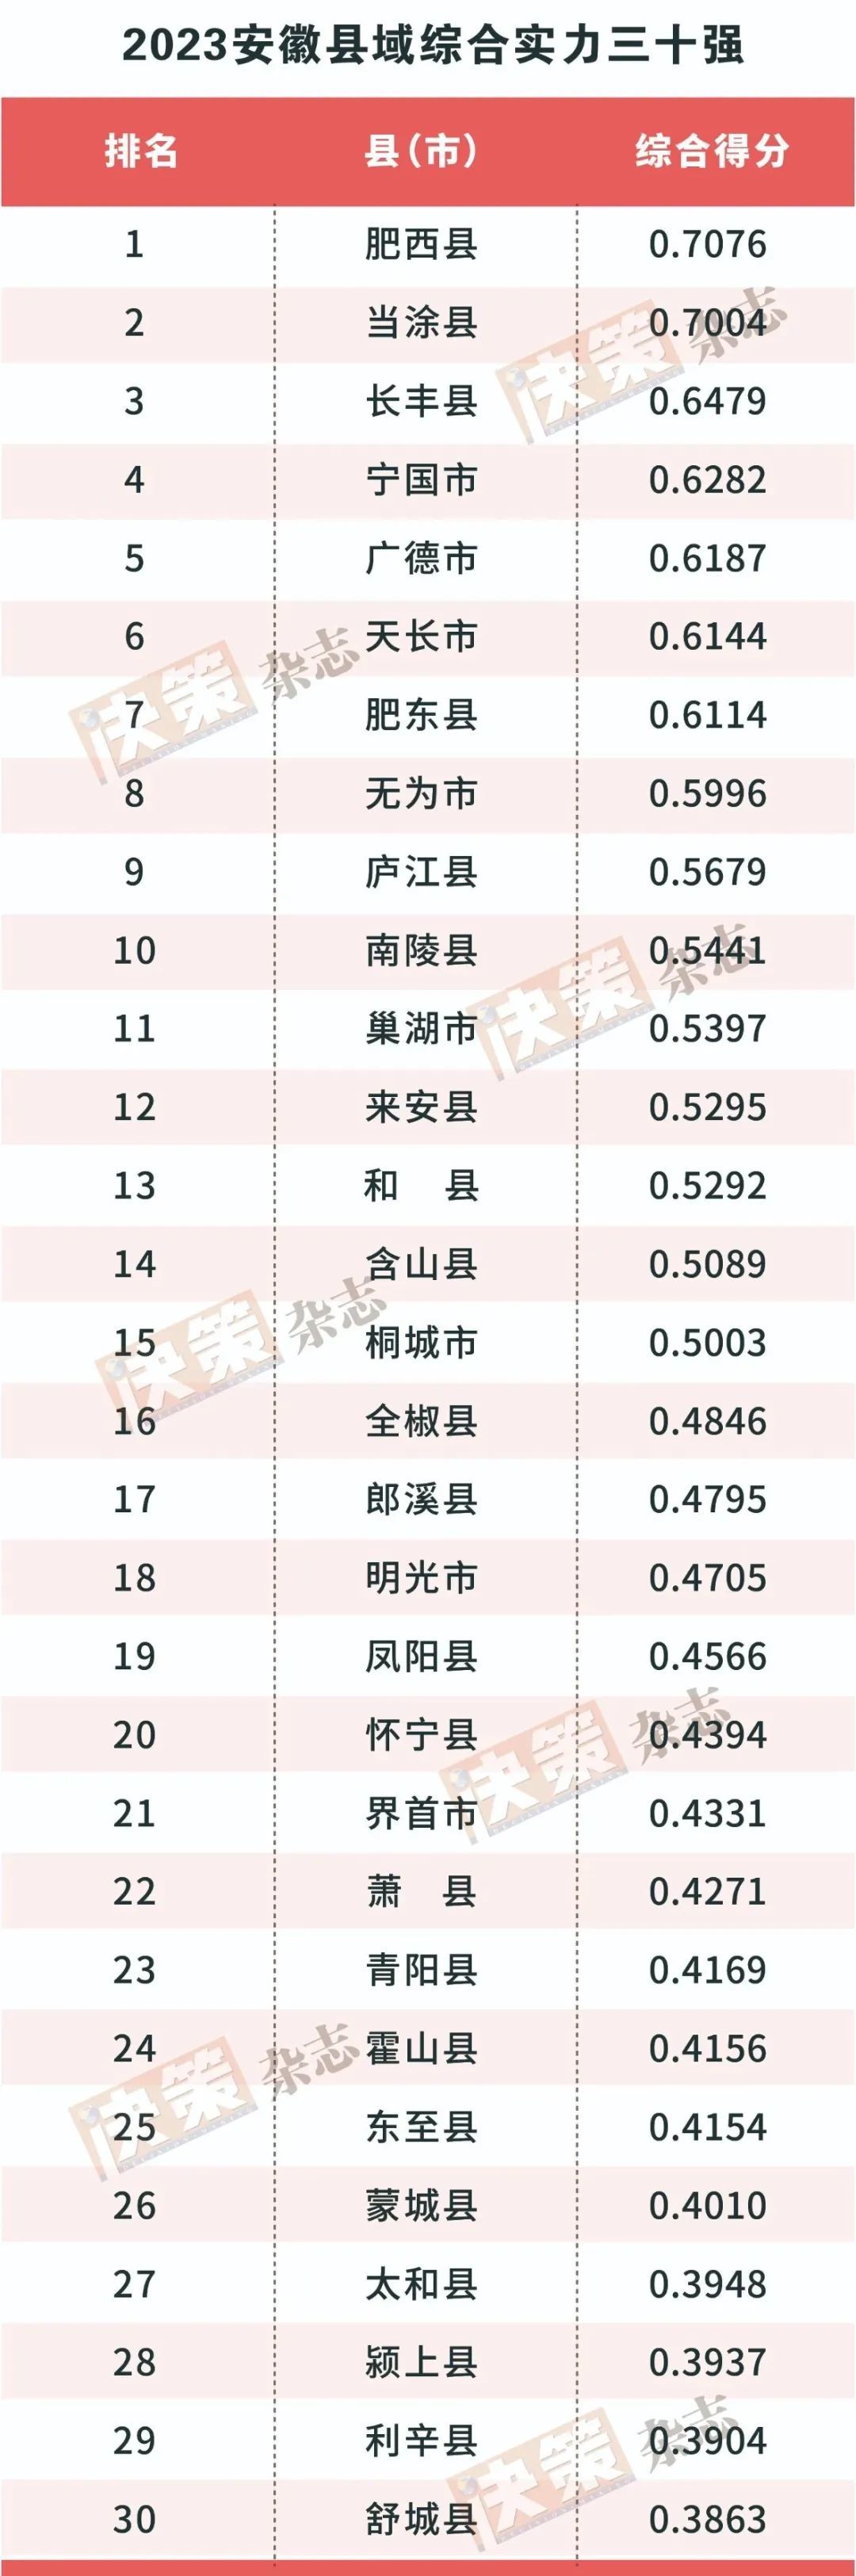 安徽排行榜_2023年上半年安徽各市GDP排行榜亳州反超蚌埠安庆增速最慢